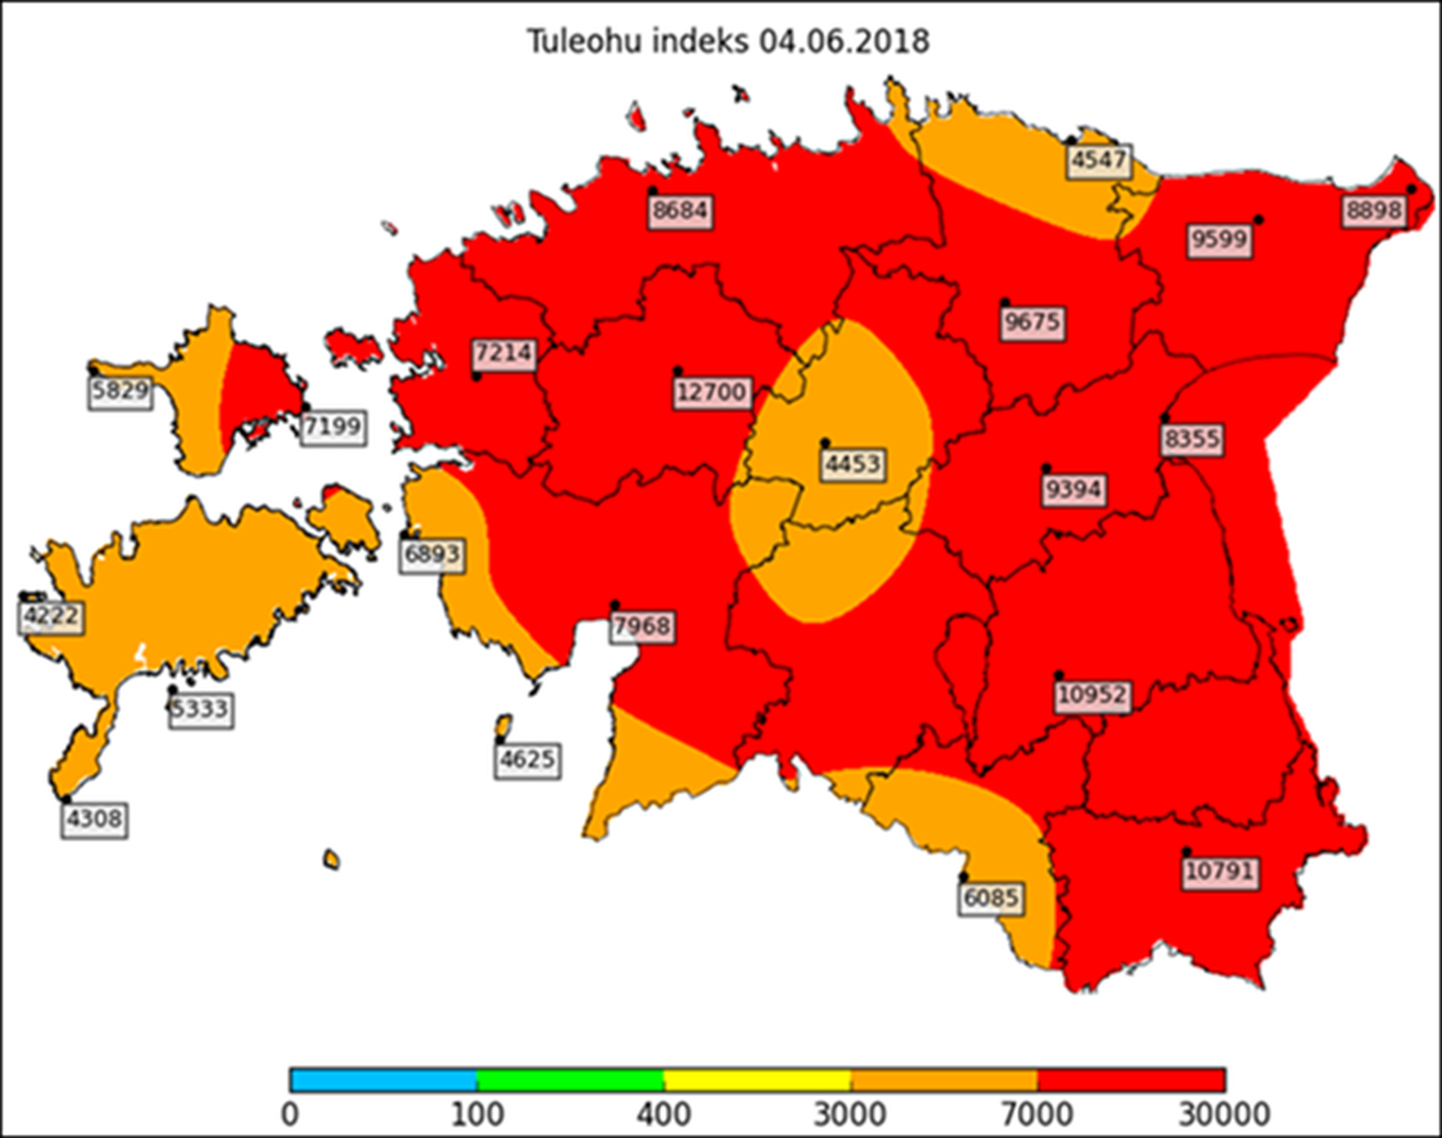 Угроза пожаров в Эстонии в последние дни увеличилась. Красным на карте отмечены зоны, где угроза возгорания особенно высока.